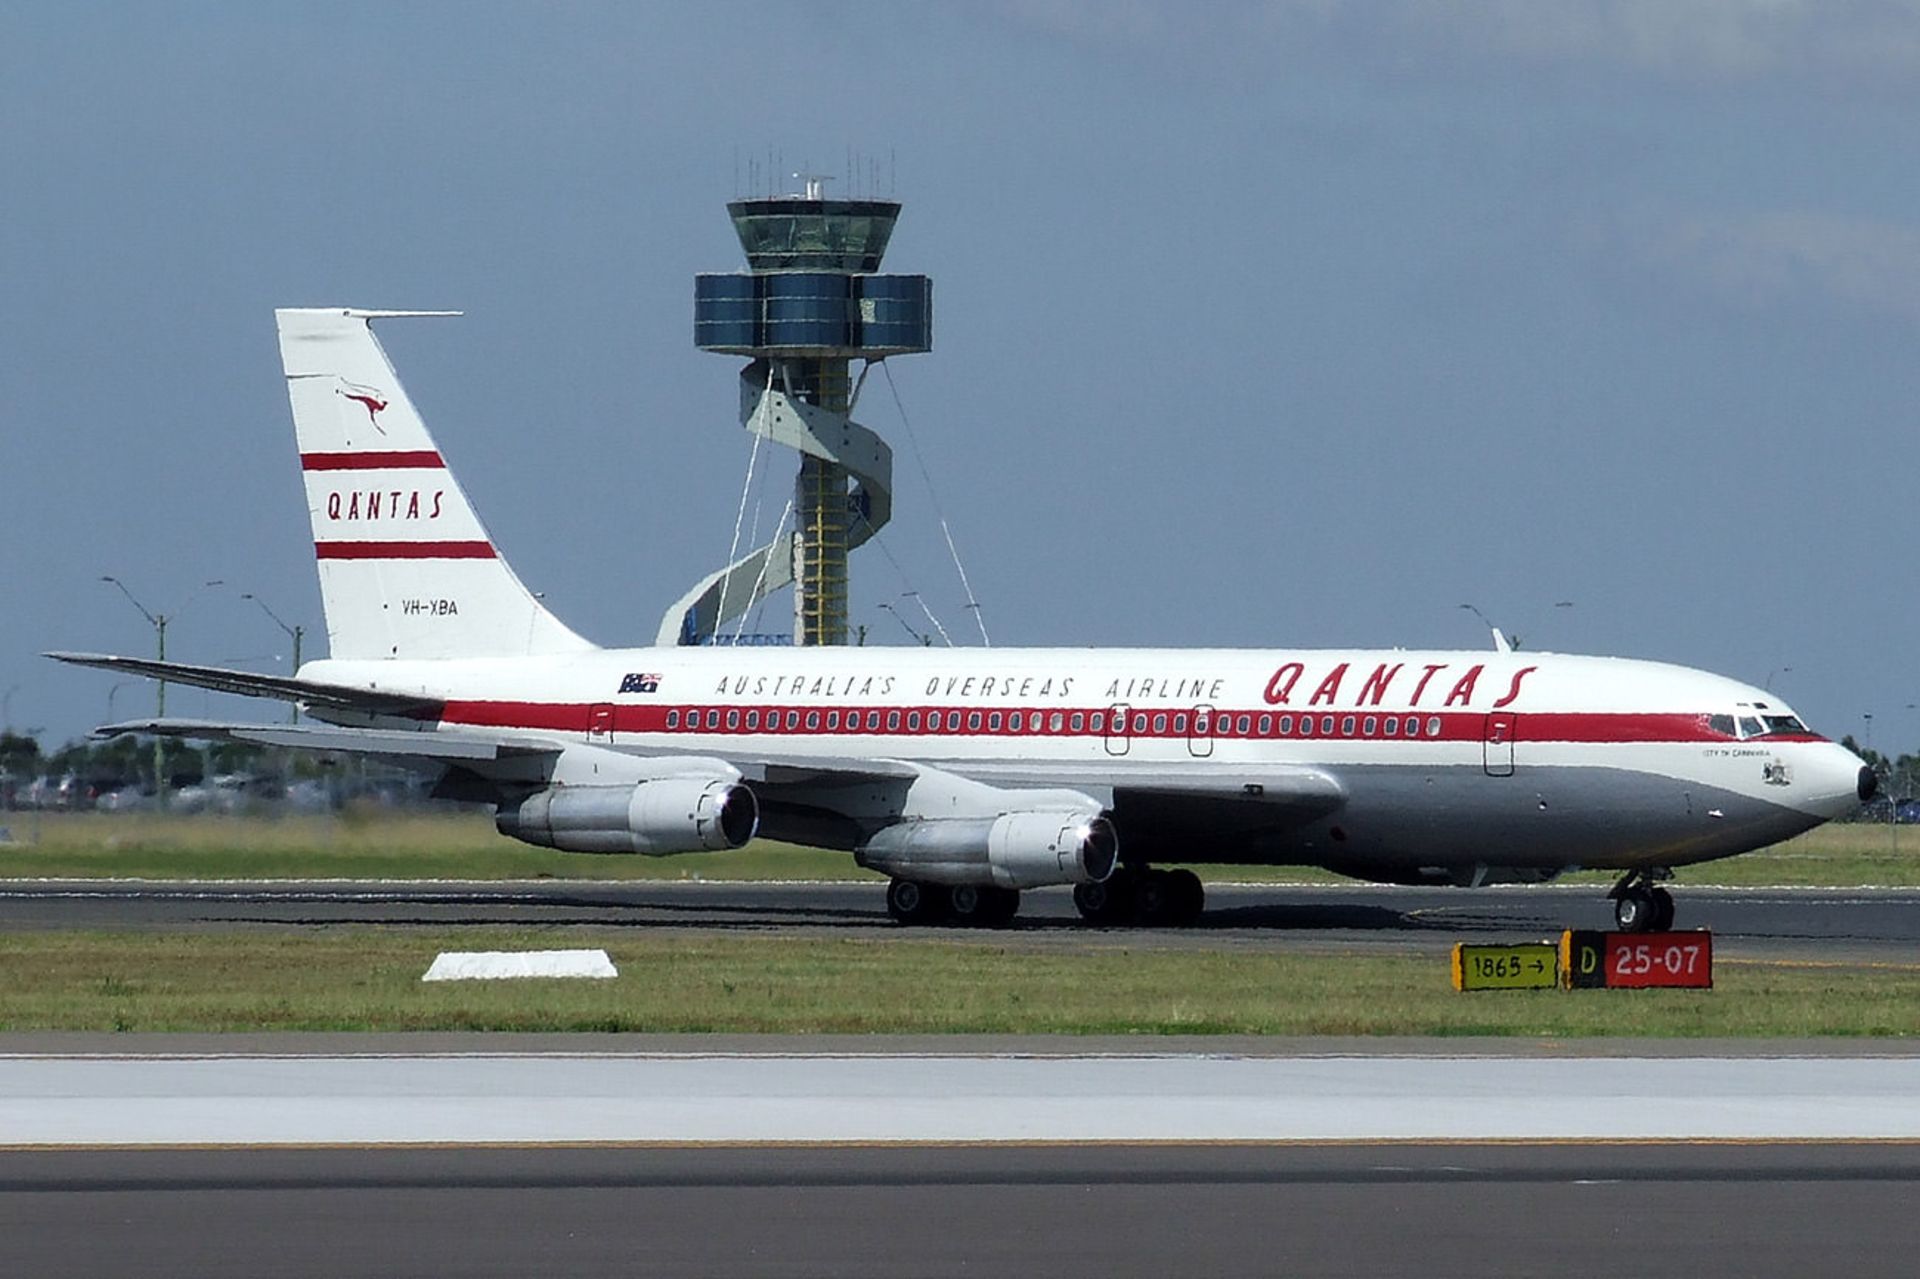 مرجع متخصصين ايران Boeing 707 Qantas